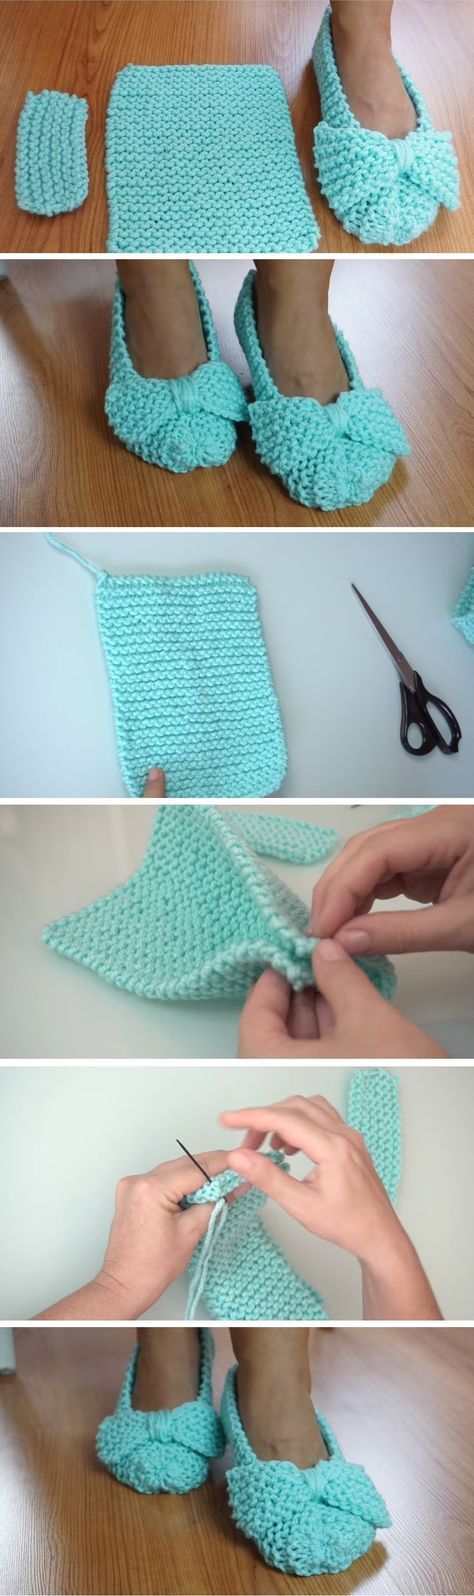 1576200593_6_Easiest-Slippers-to-Make-–-Crochet-or-Knit.jpg